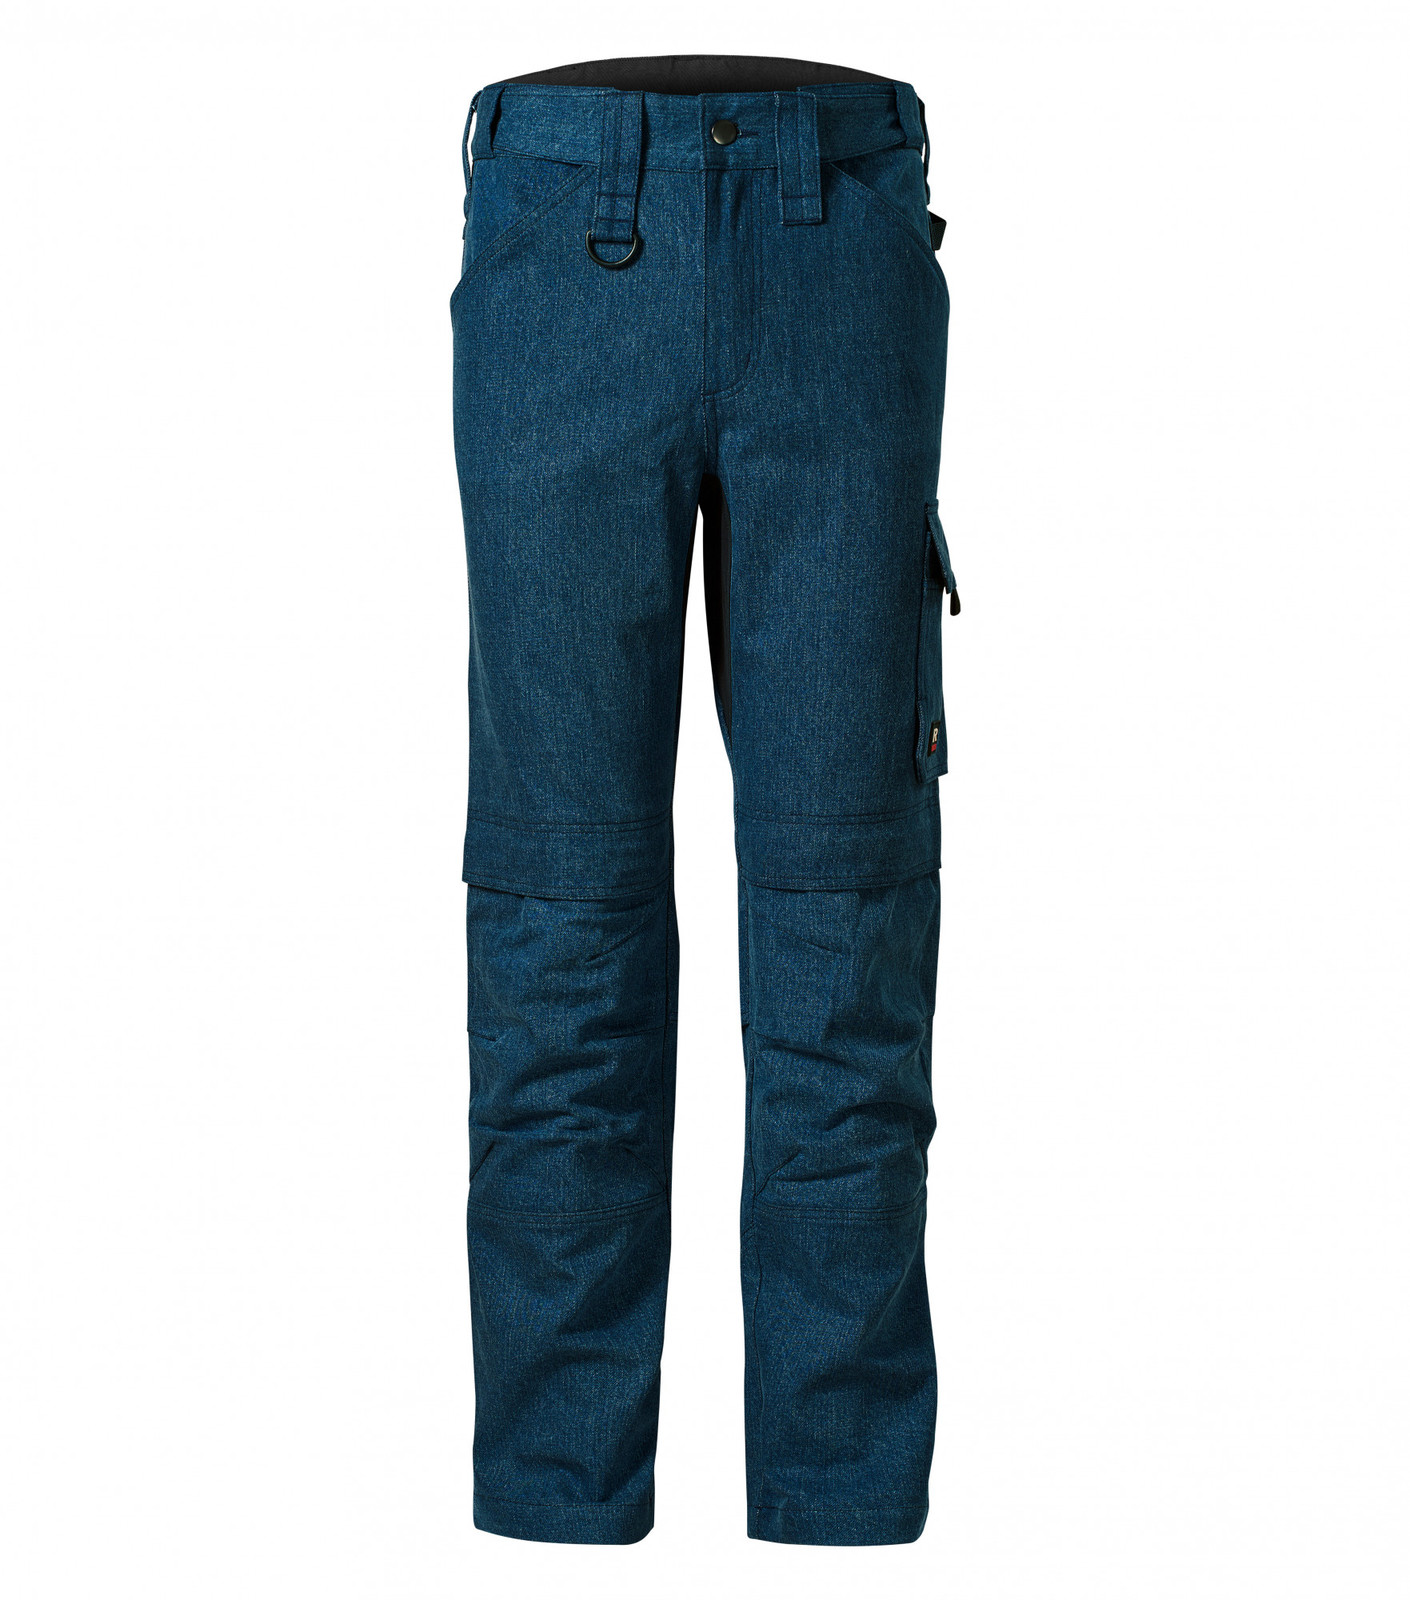 Pánske pracovné džínsy Rimeck Vertex W08 - veľkosť: 46, farba: denim